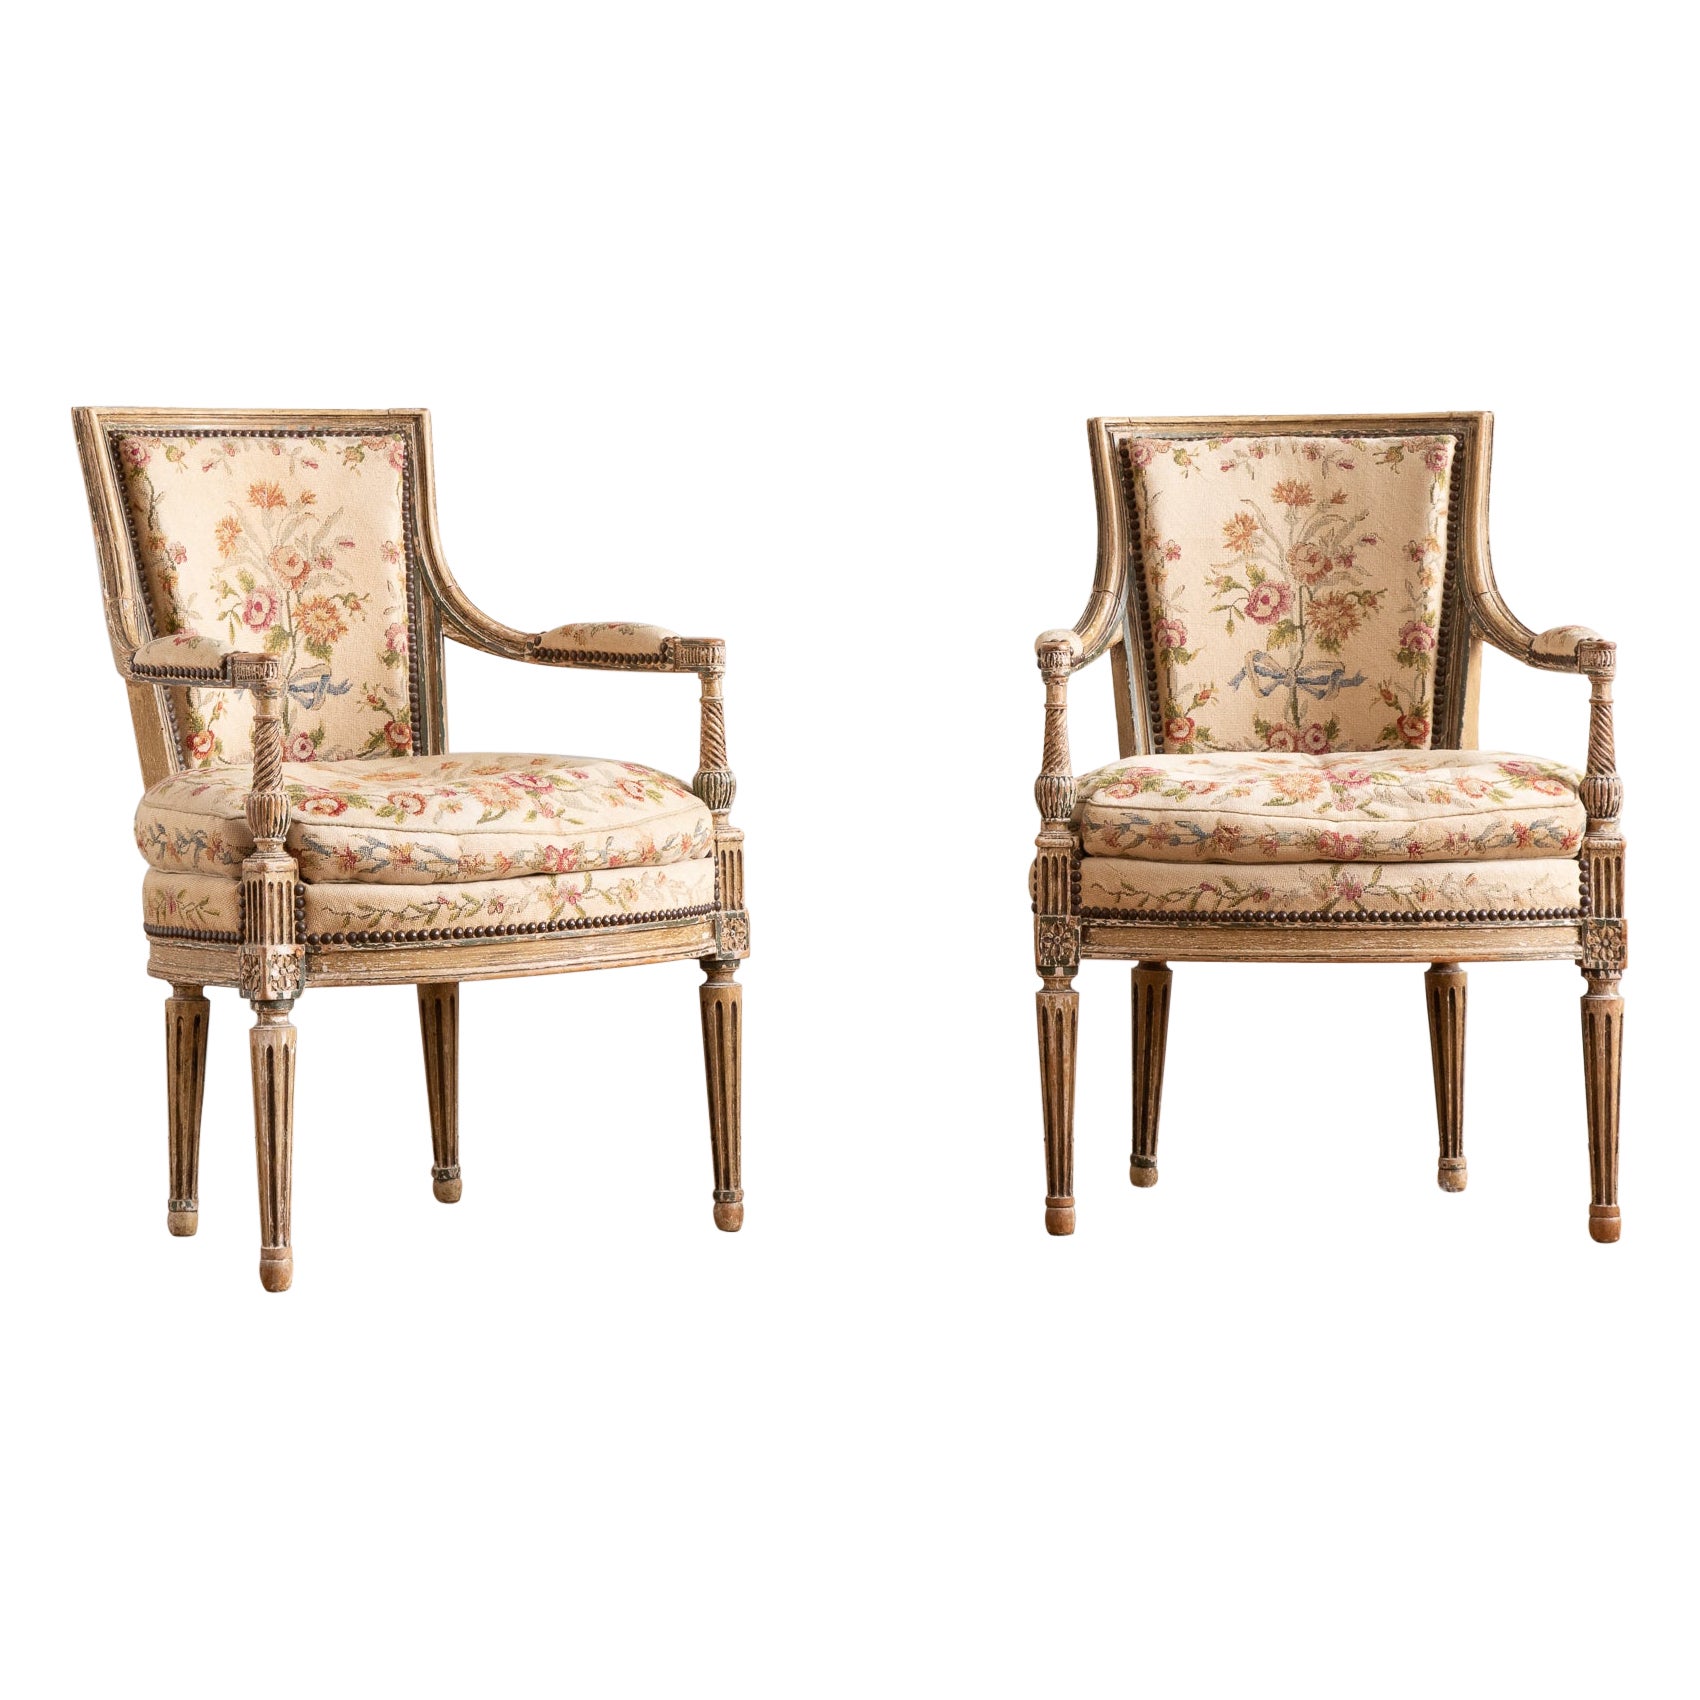 Paire de fauteuils de style Louis XVI de la fin du XIXe siècle avec tapisserie à l'aiguille